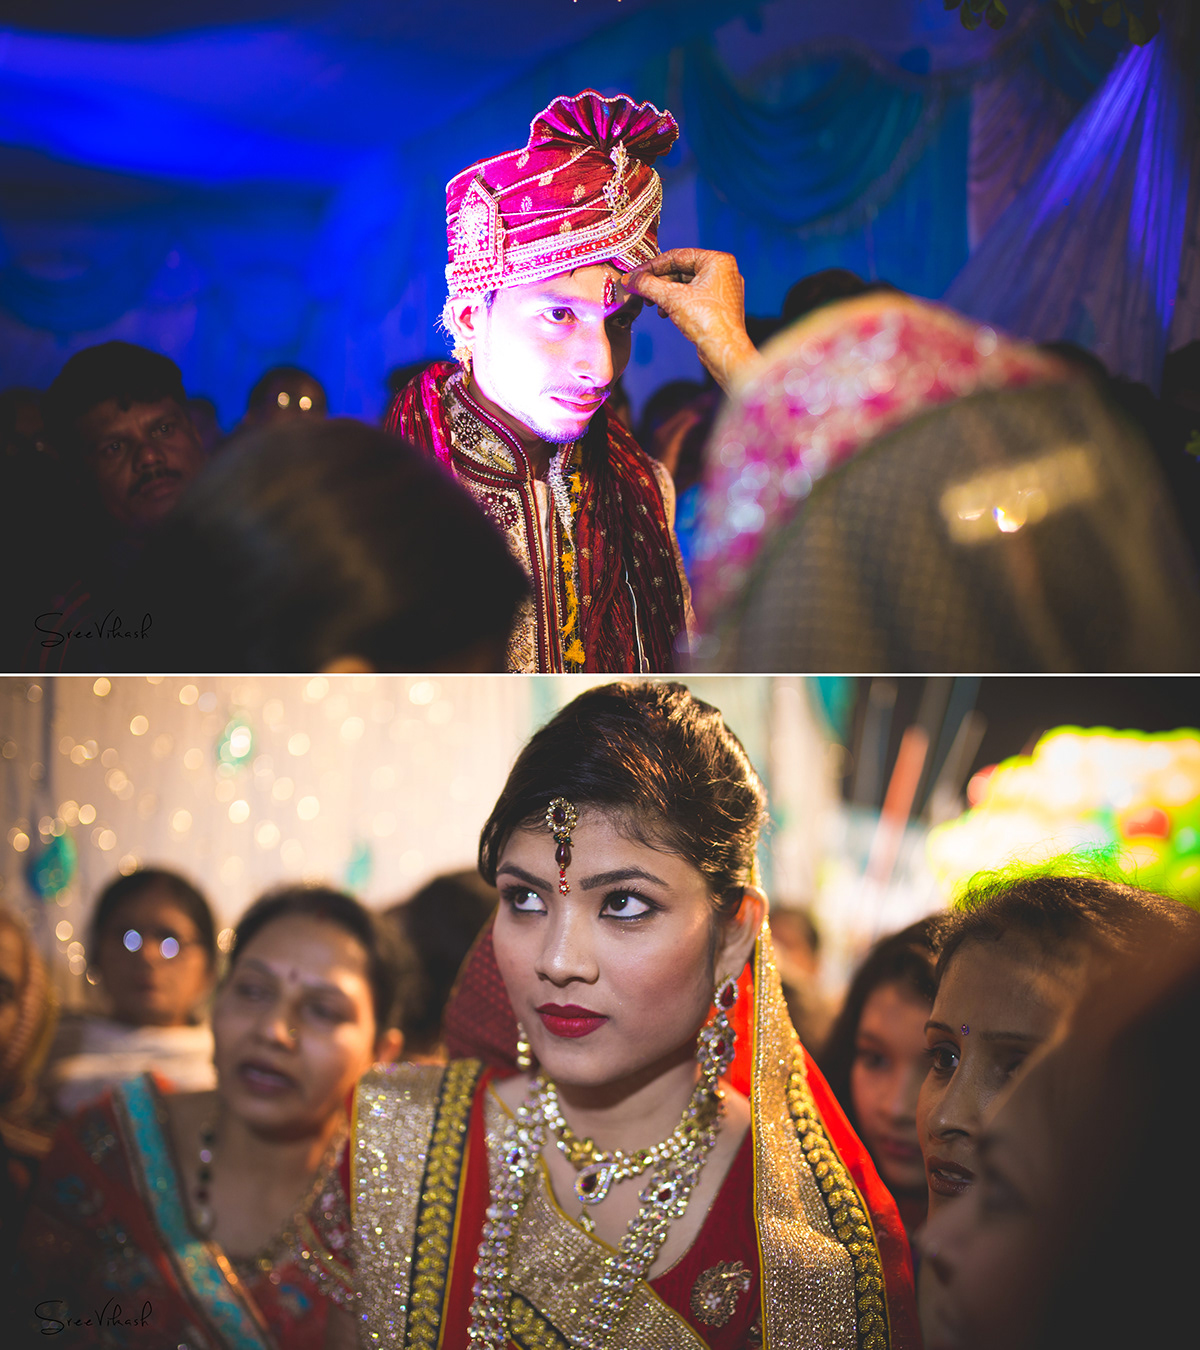 #weddingseason #indianwedding #stories #weddingphotographer #bangalore #wedding2015 #candid #candidwedding #art #sreevikash #india #indianwedding #marriage #bokeh #love